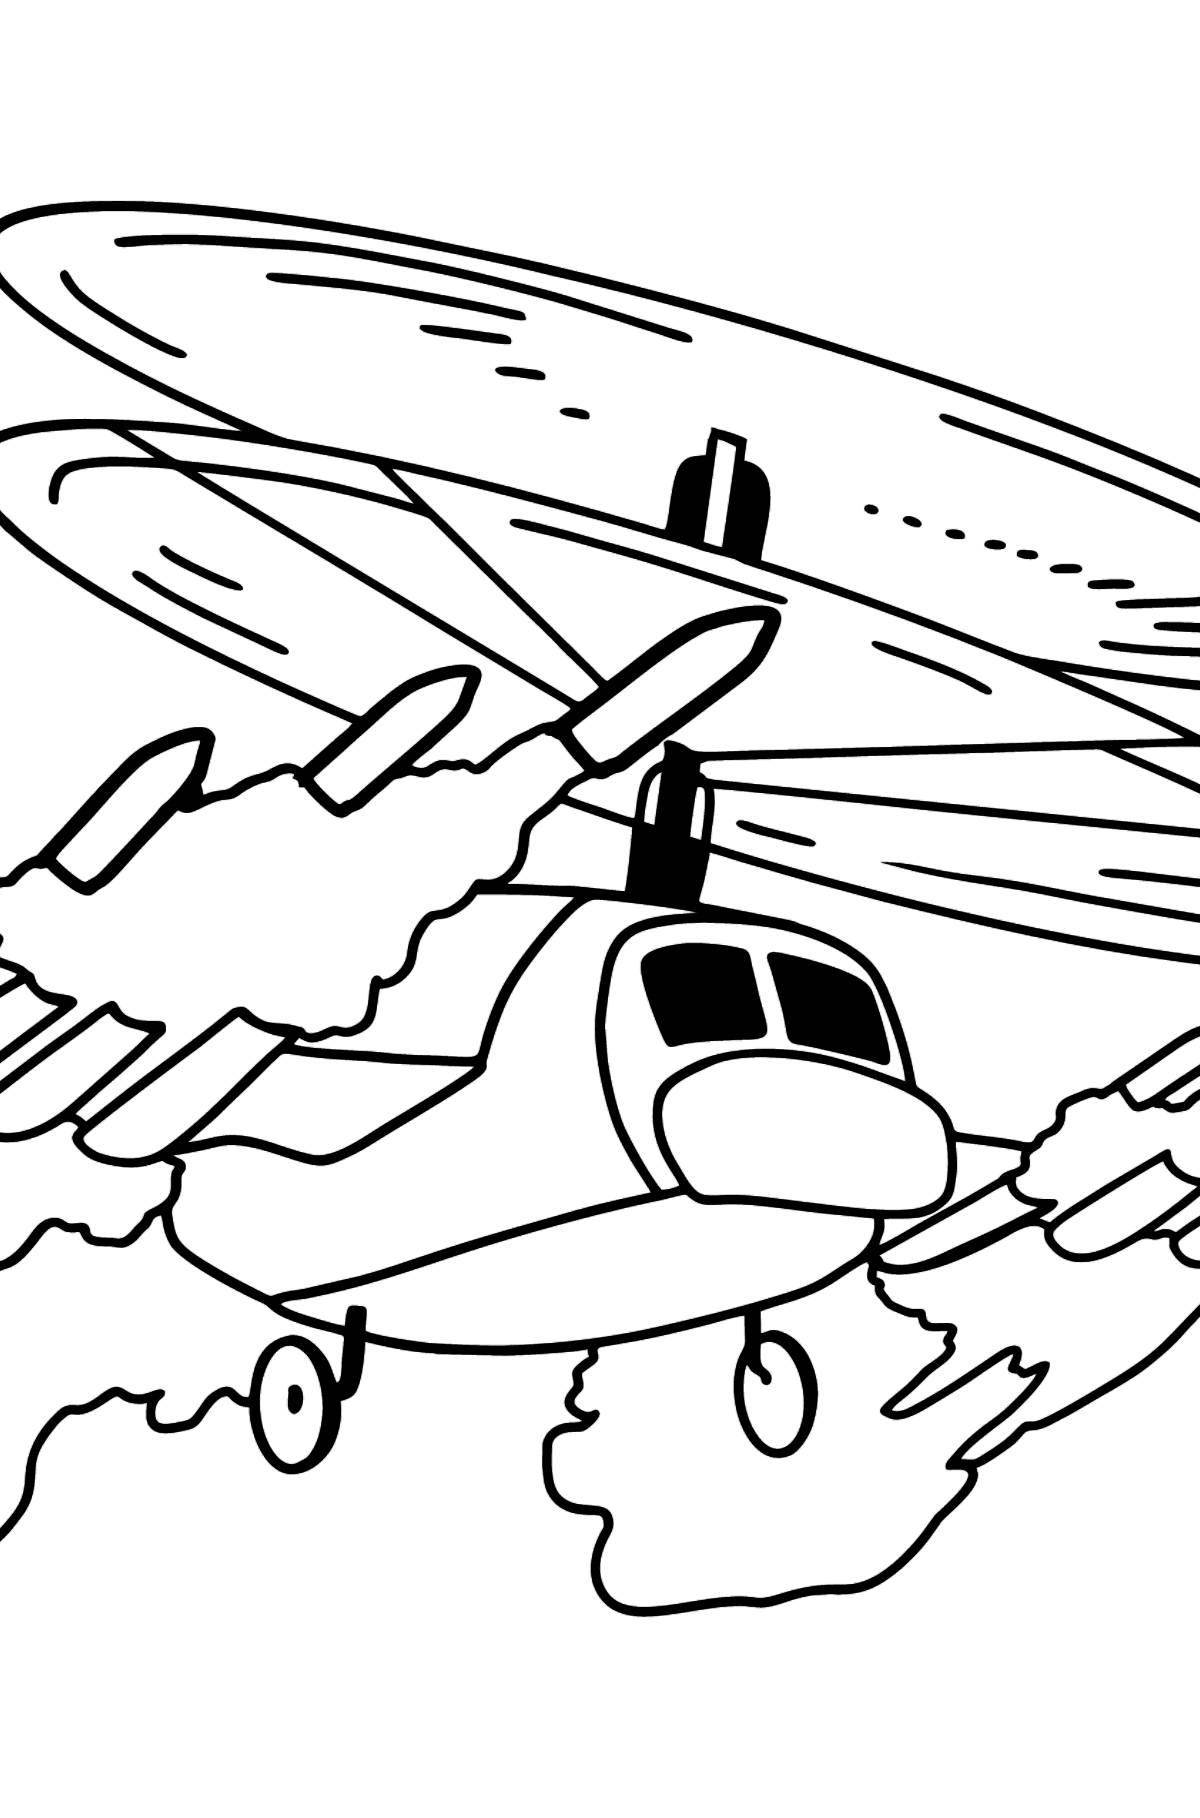 Раскраска с военным летчиком для детей